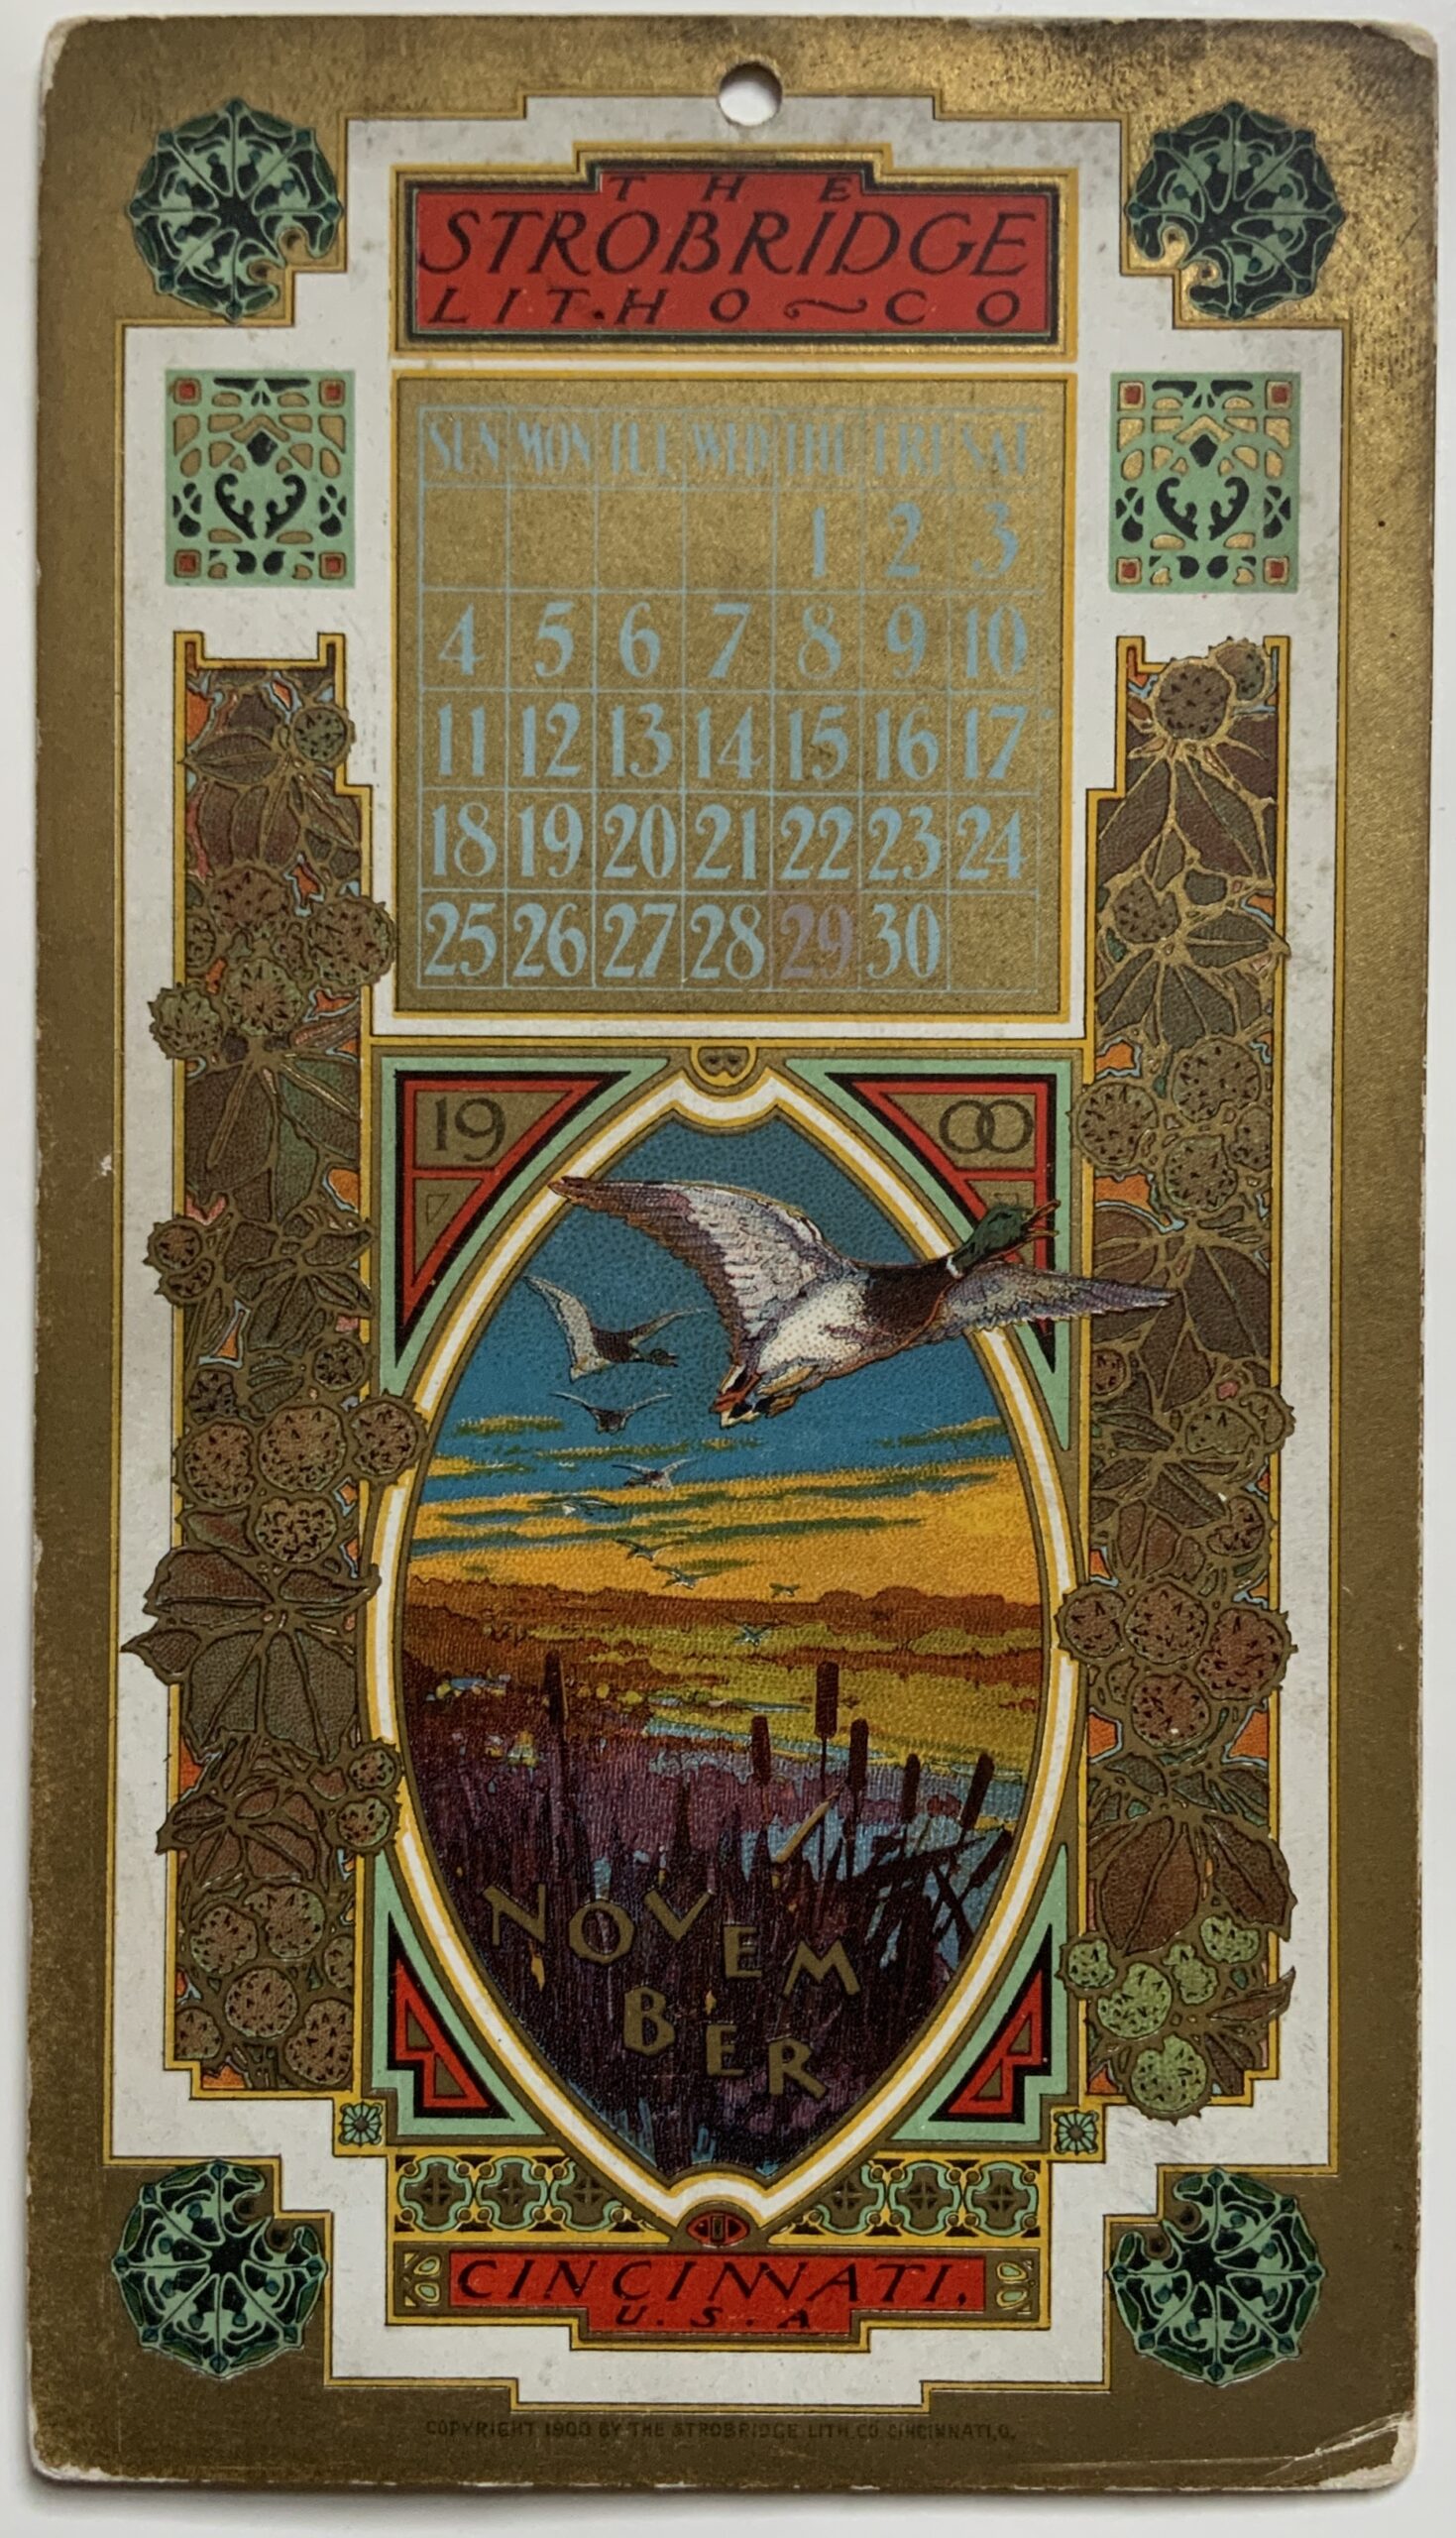 M155	STROBRIDGE LITHO CO. CARD 1900 - NOVEMBER